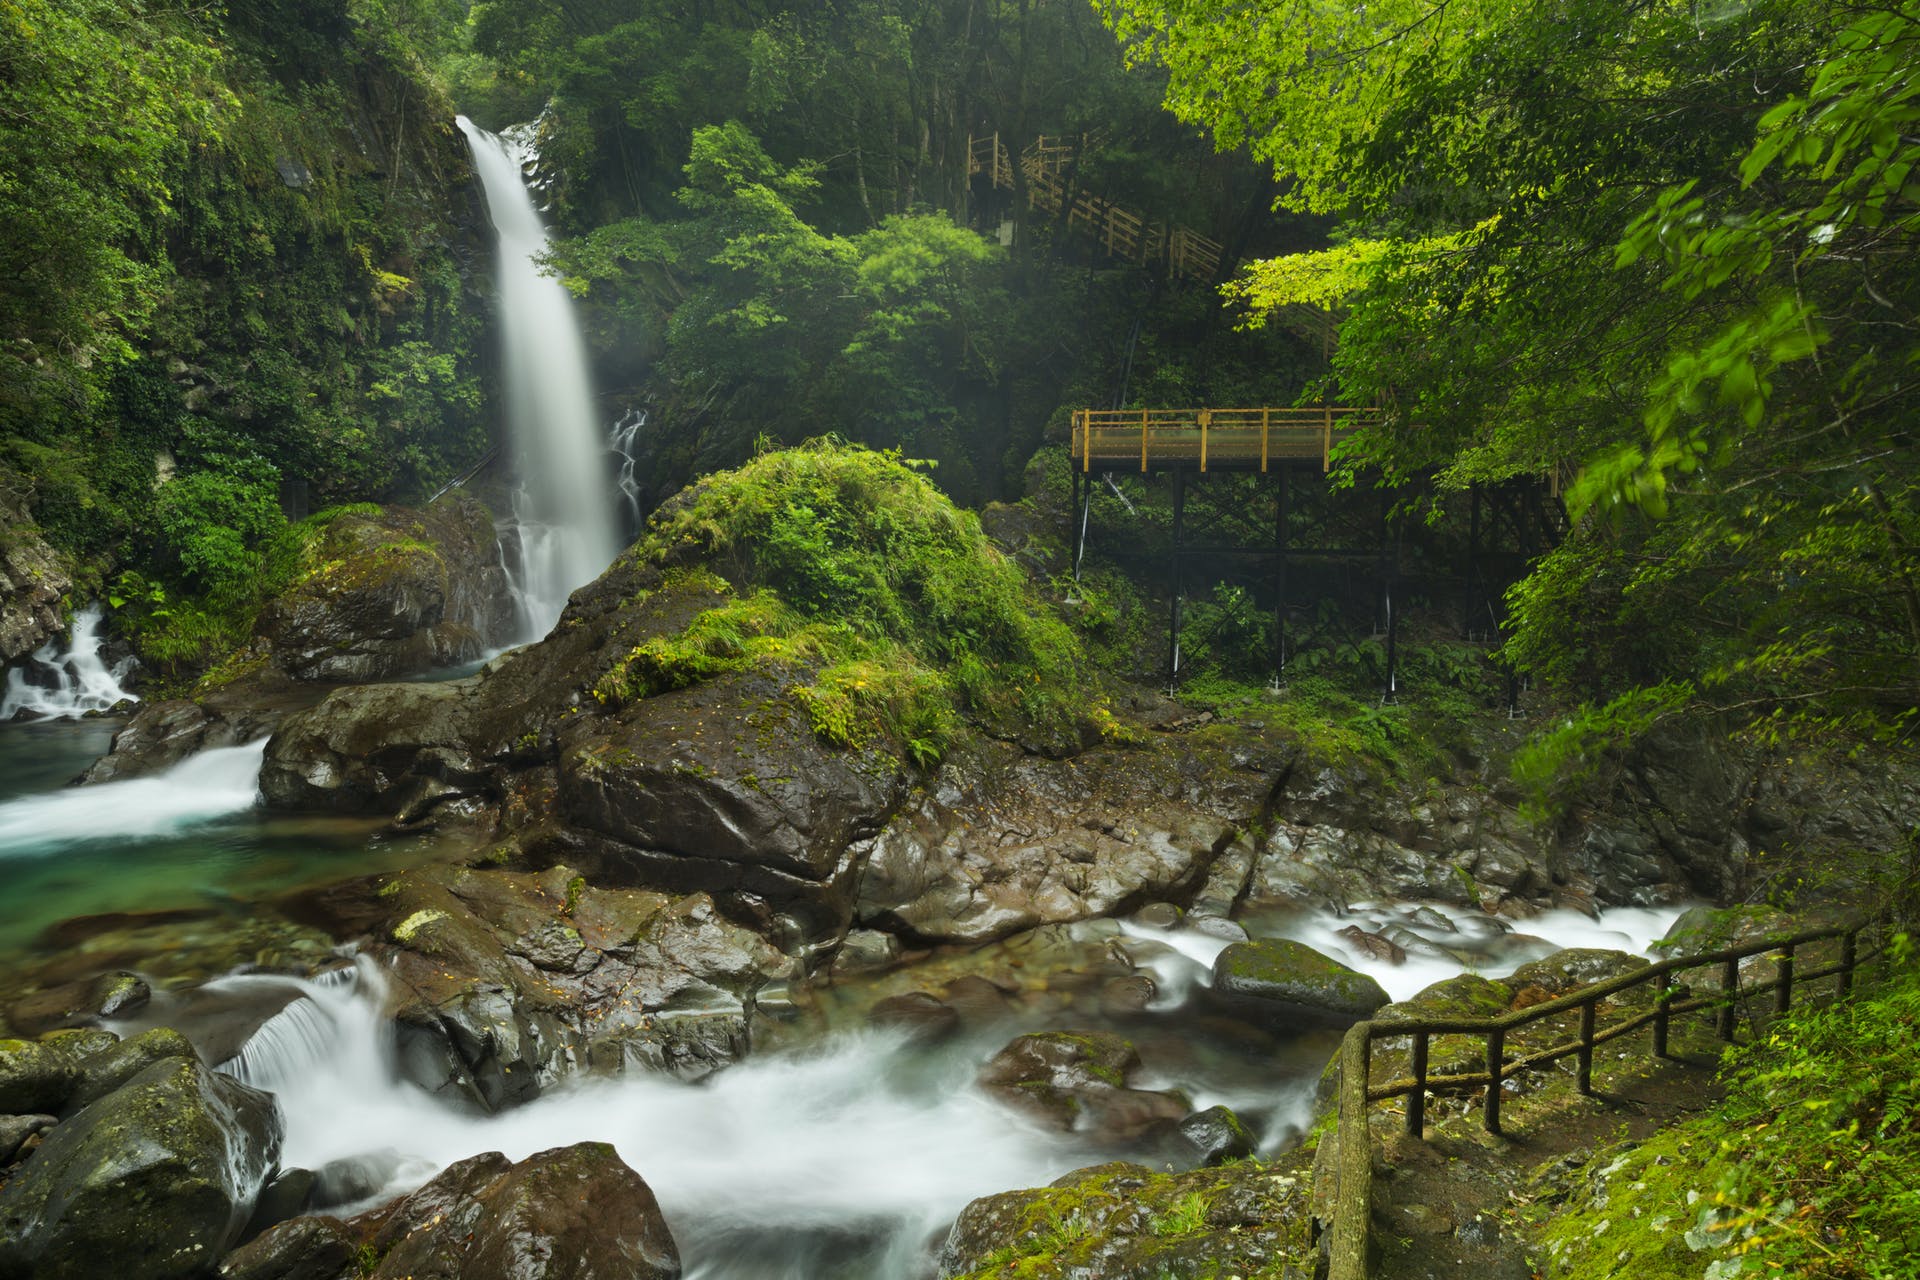 Kayak and Hike the Sacred Paths of Japan